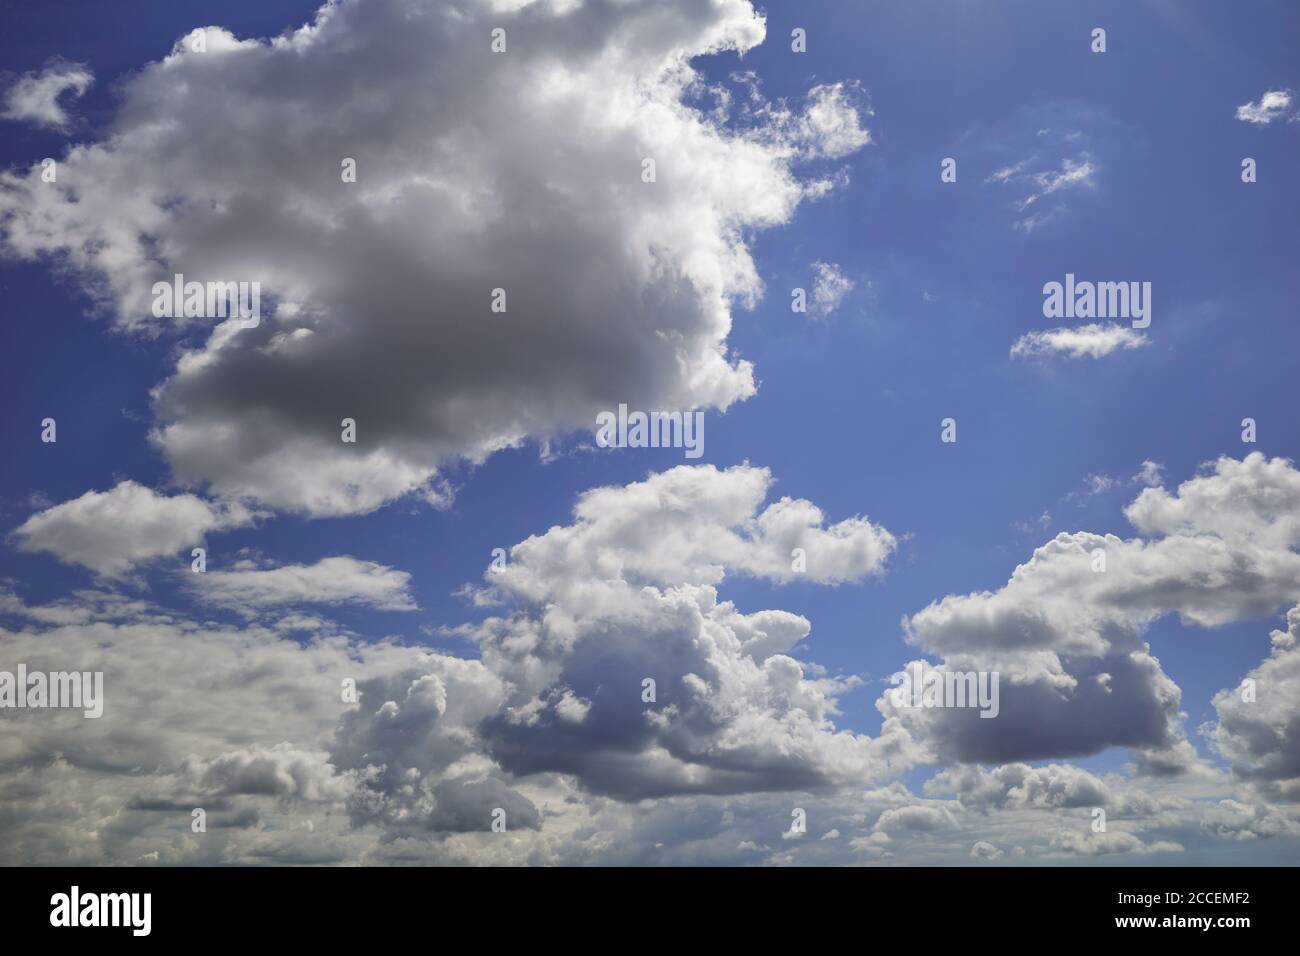 Nuvole bulbose bianche e grigie scure nel cielo indaco. Nuvole bianche e grigie soffici e billanti nel cielo. Contesto di previsione e meteorologia Foto Stock